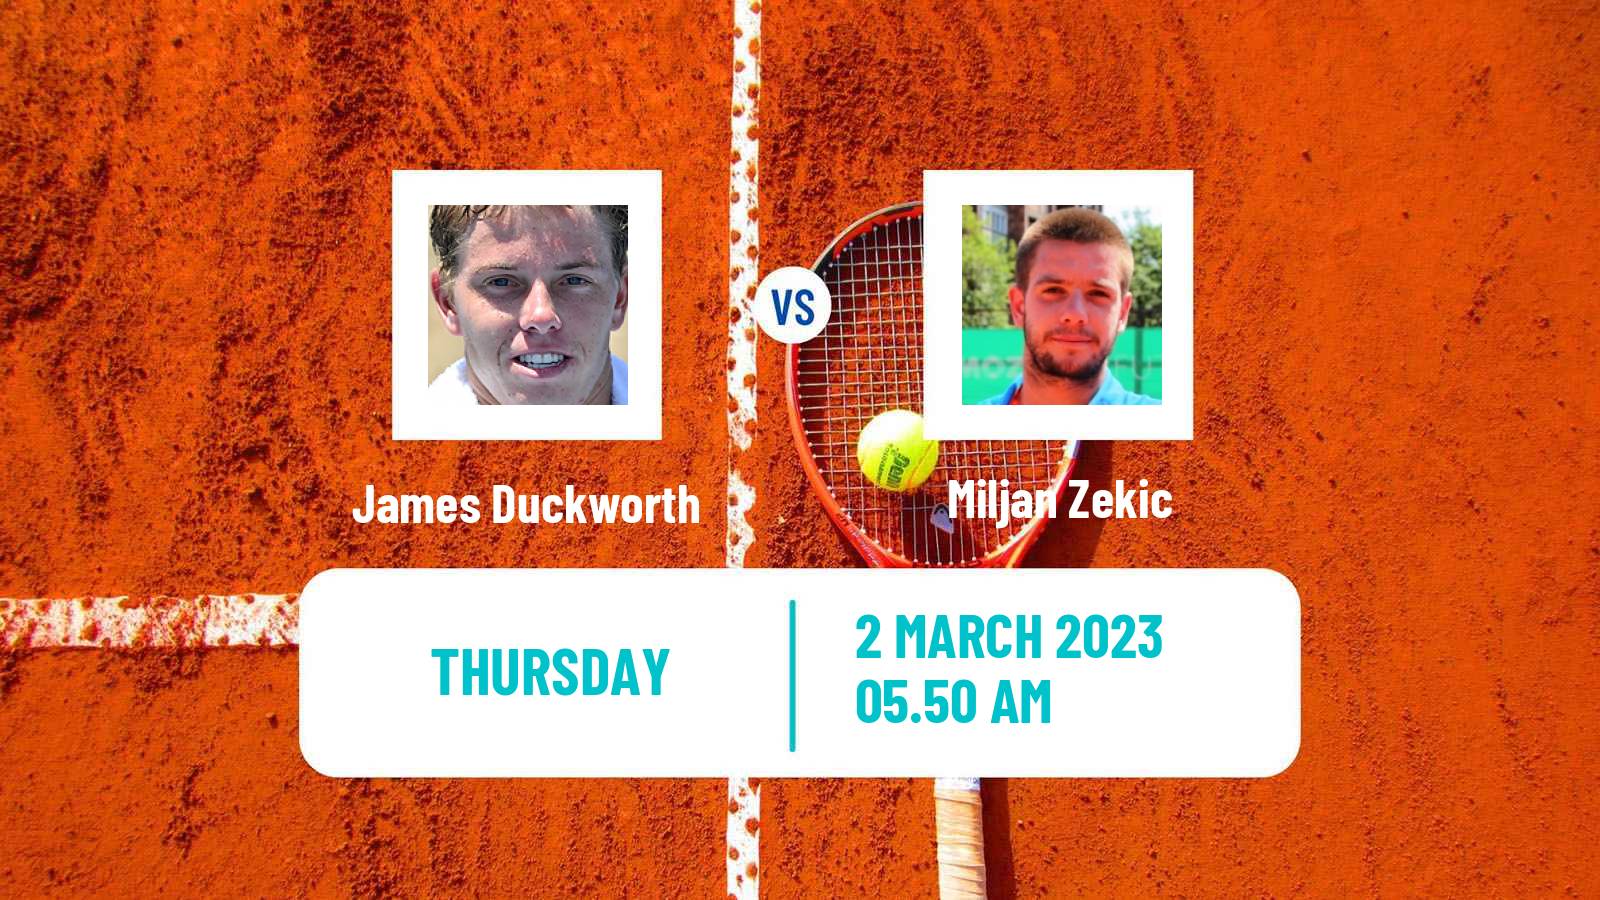 Tennis ATP Challenger James Duckworth - Miljan Zekic